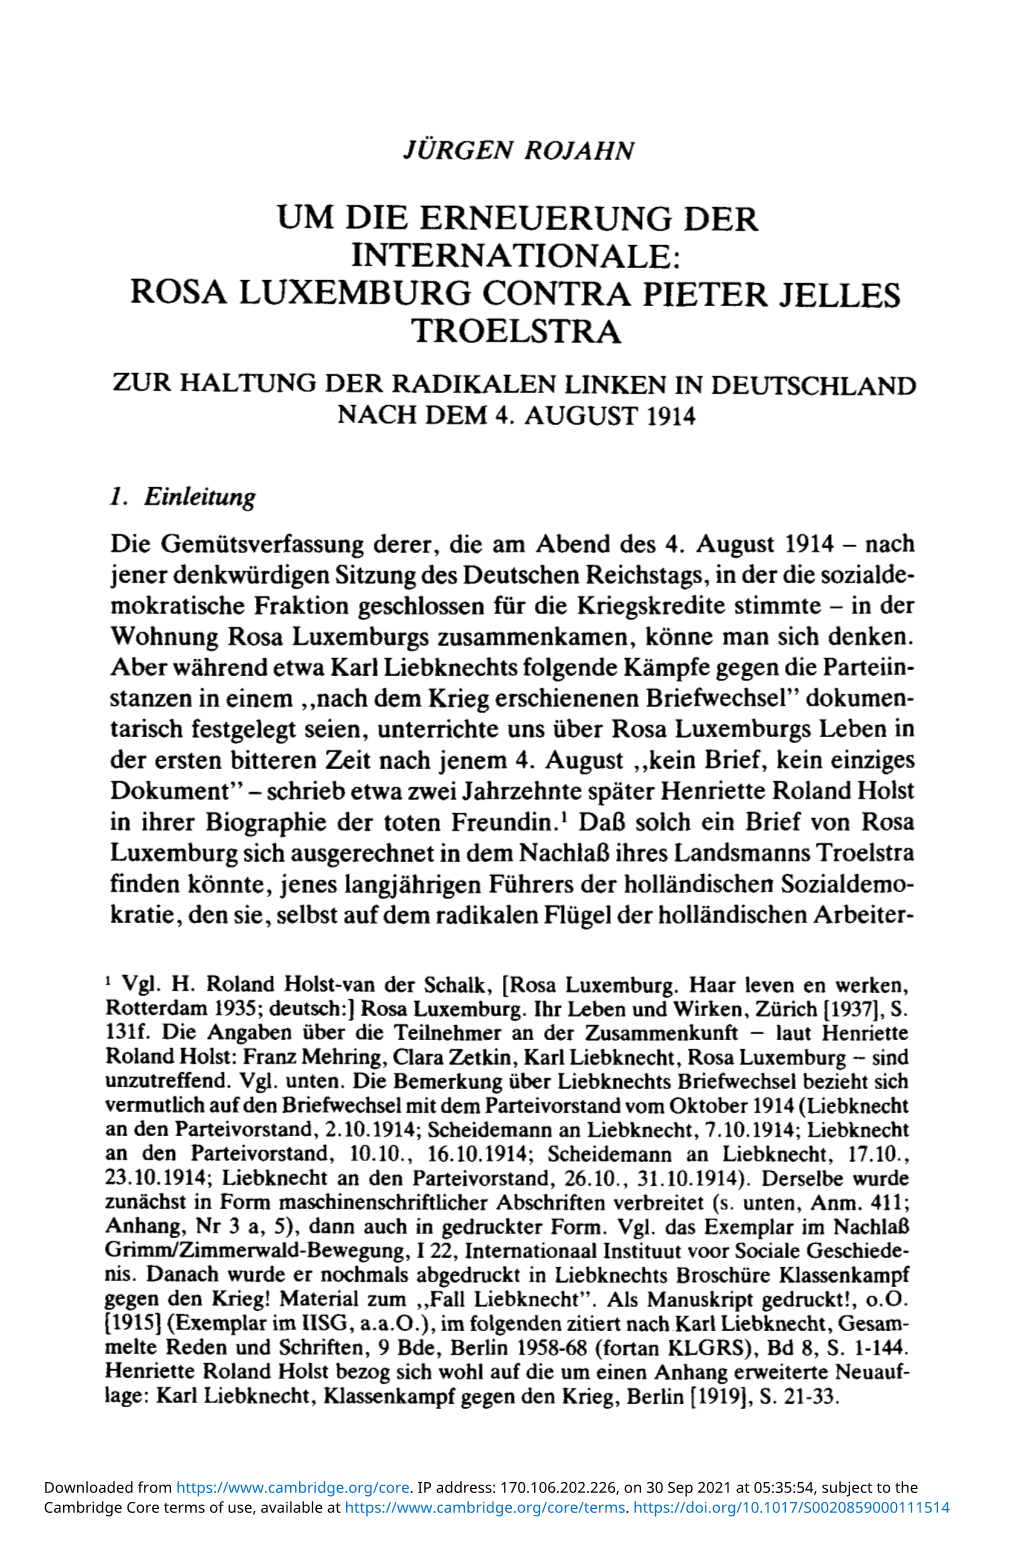 Rosa Luxemburg Contra Pieter Jelles Troelstra Zur Haltung Der Radikalen Linken in Deutschland Nach Dem 4